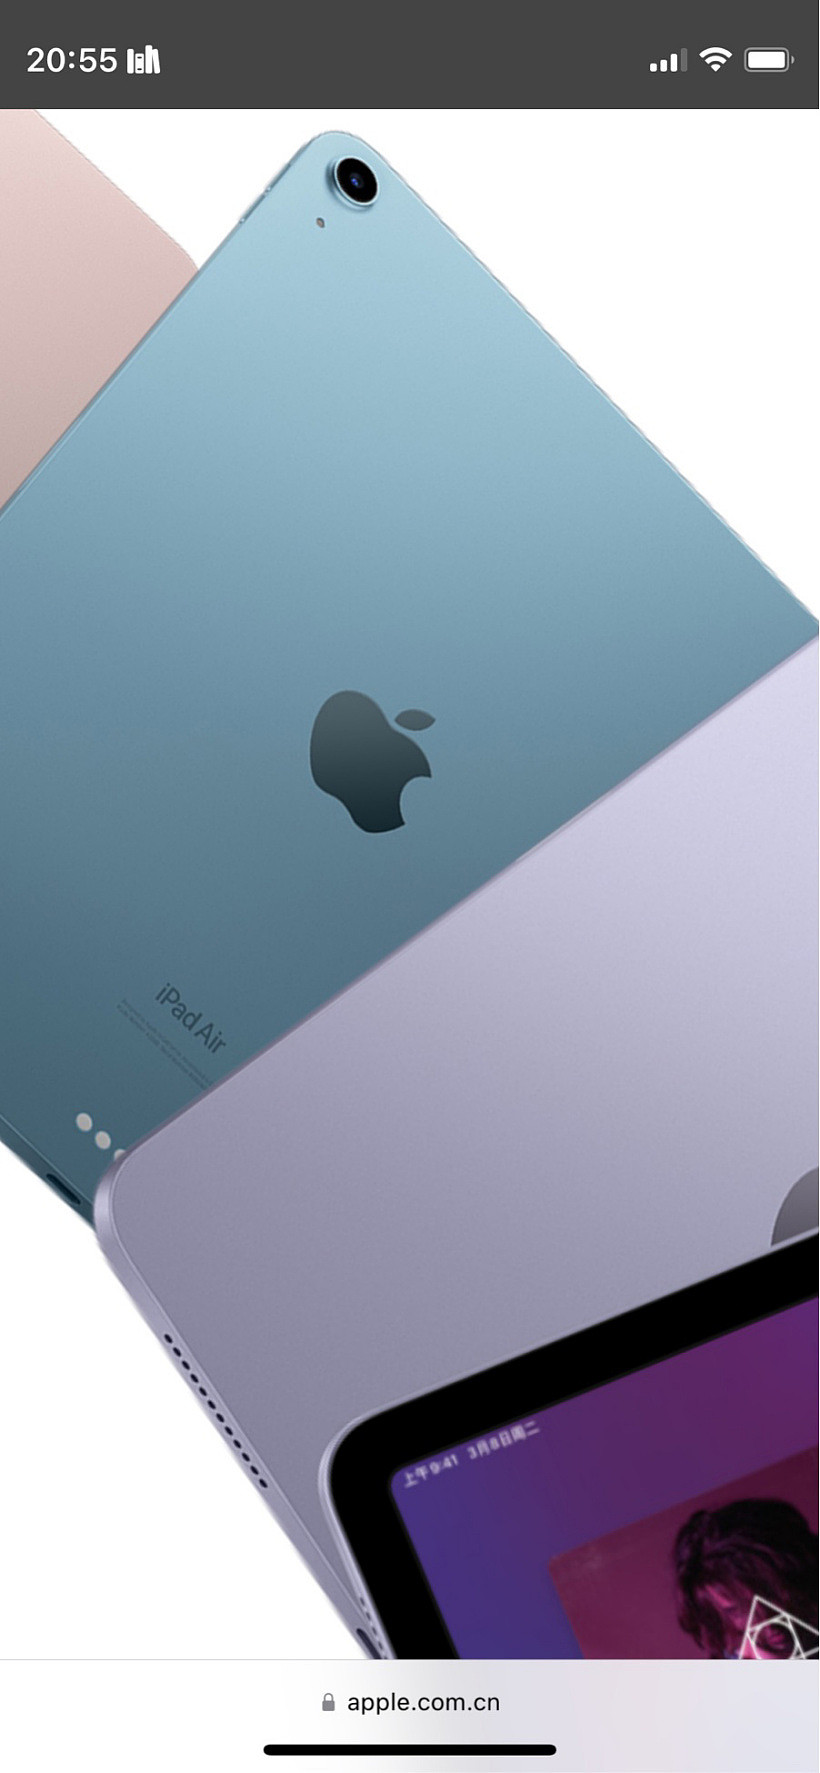 苹果 iPad Air 5 平板电脑背面品牌英文 Logo 由“iPad”变成“iPad Air” - 1